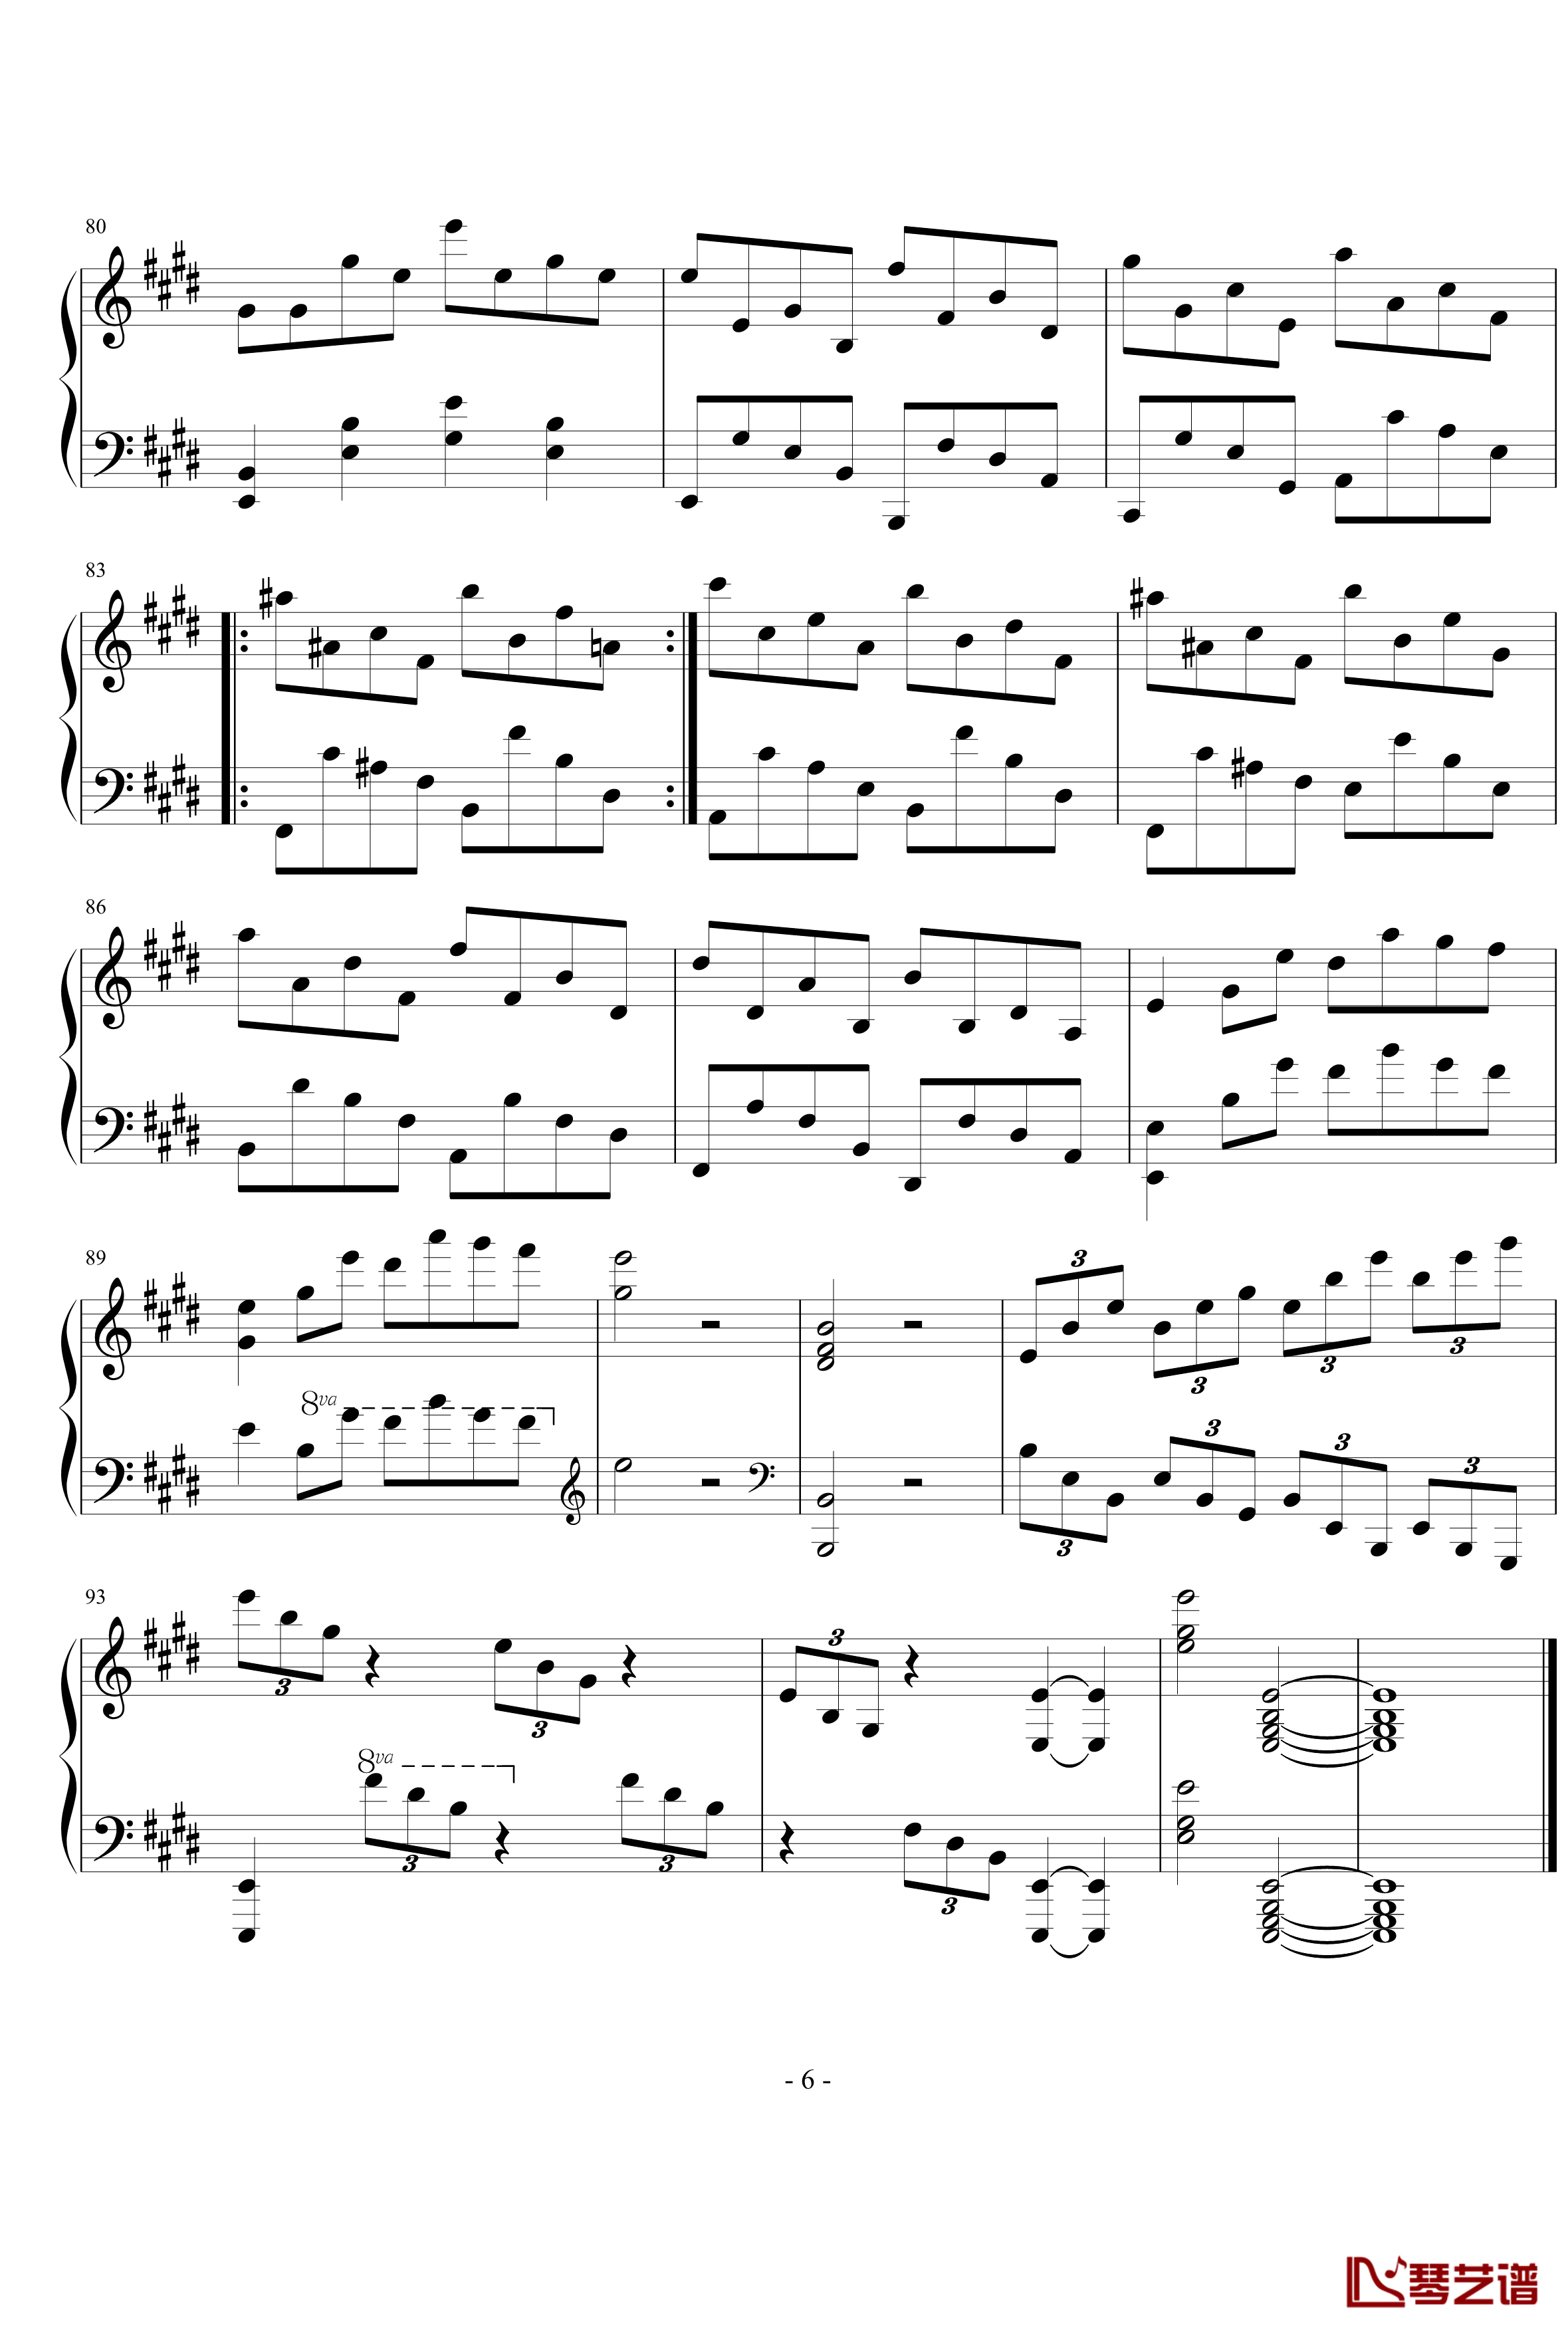 E大调第八练习曲钢琴谱-PARROT1866